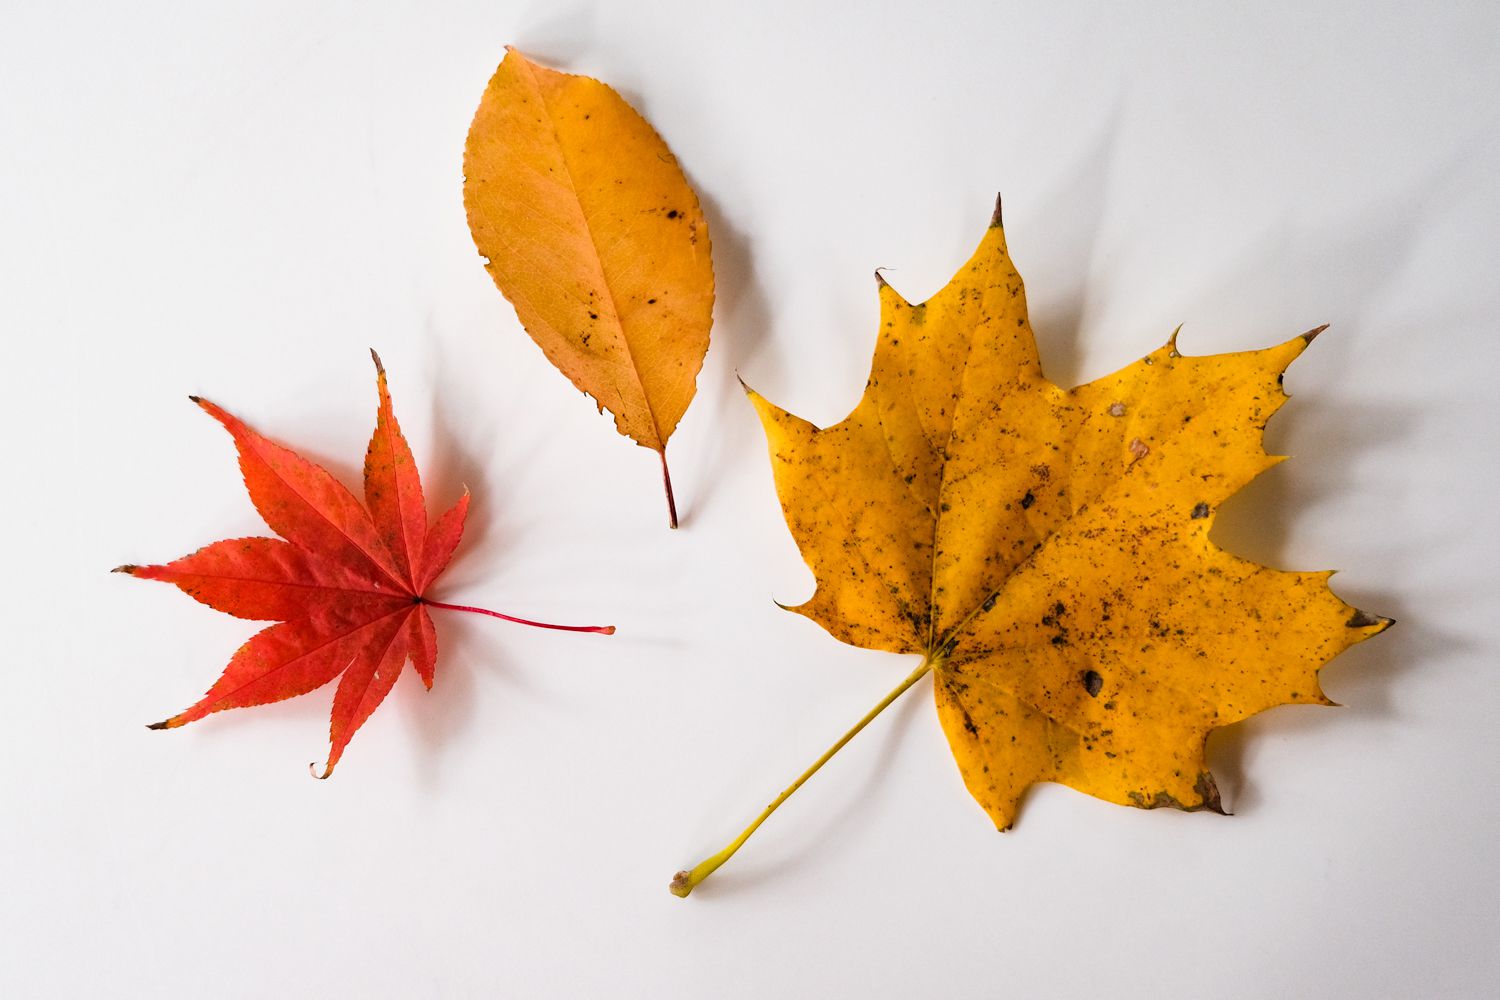 hoja de arce roja y hojas de otoño amarillas de los árboles mostradas sobre fondo blanco